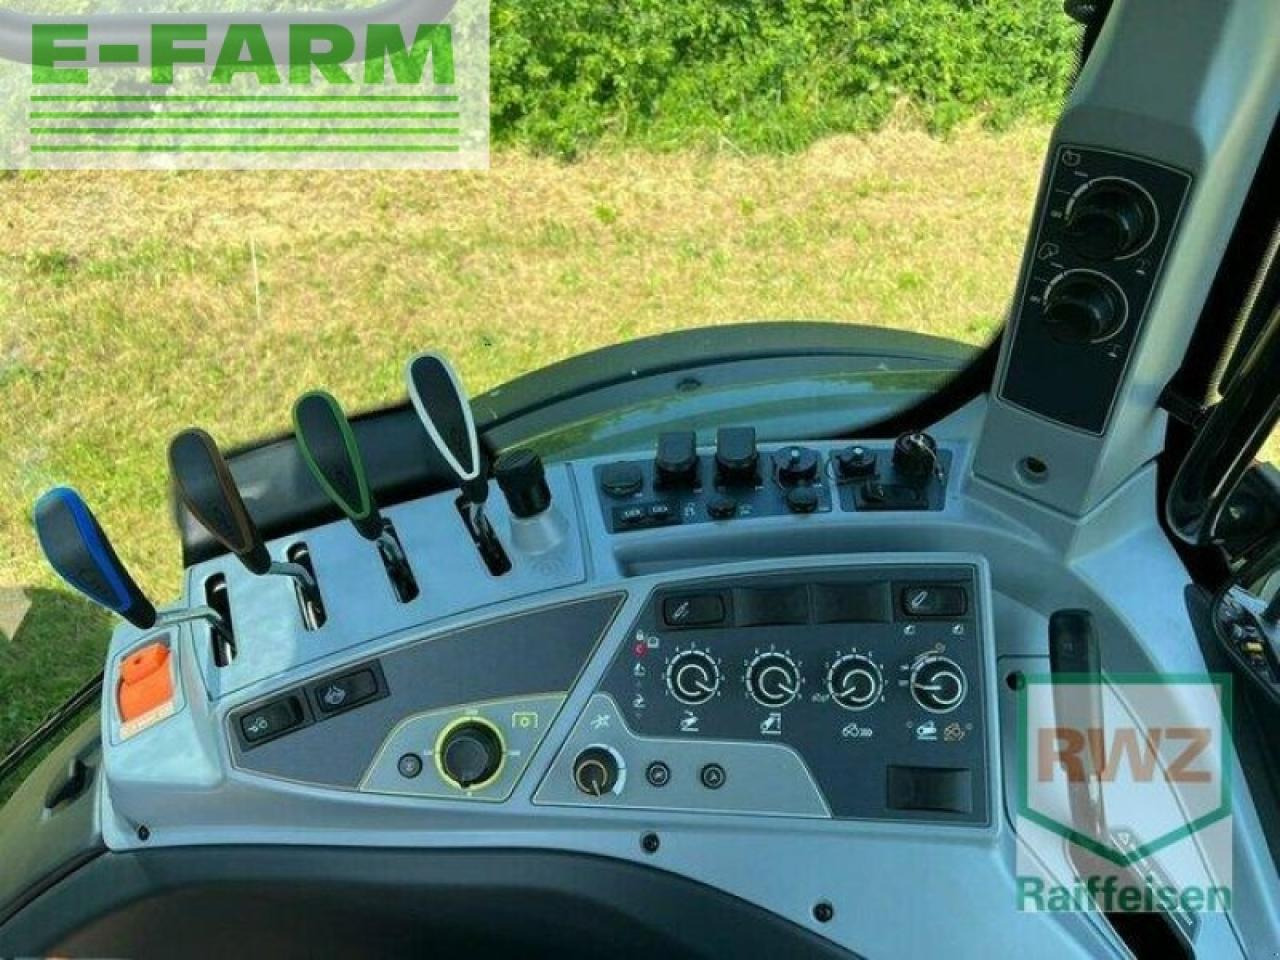 Farm tractor Valtra n154 active e: picture 14